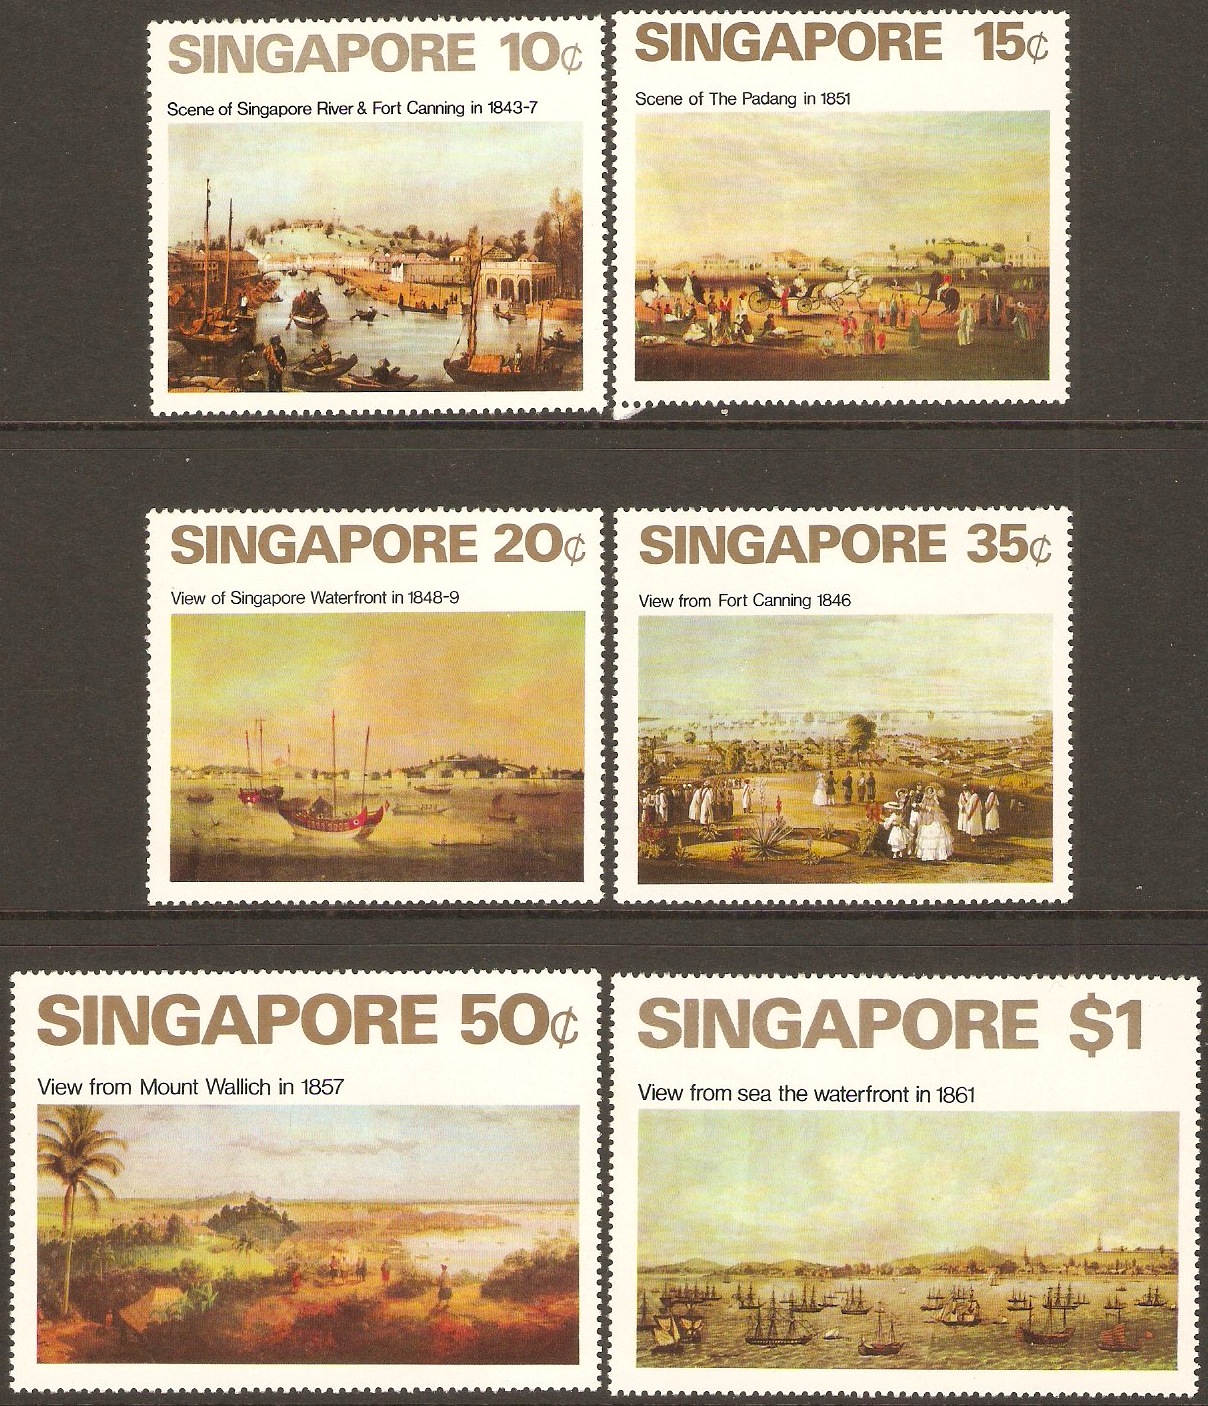 Singapore 1971 Art Stamps Set. SG165-SG170.